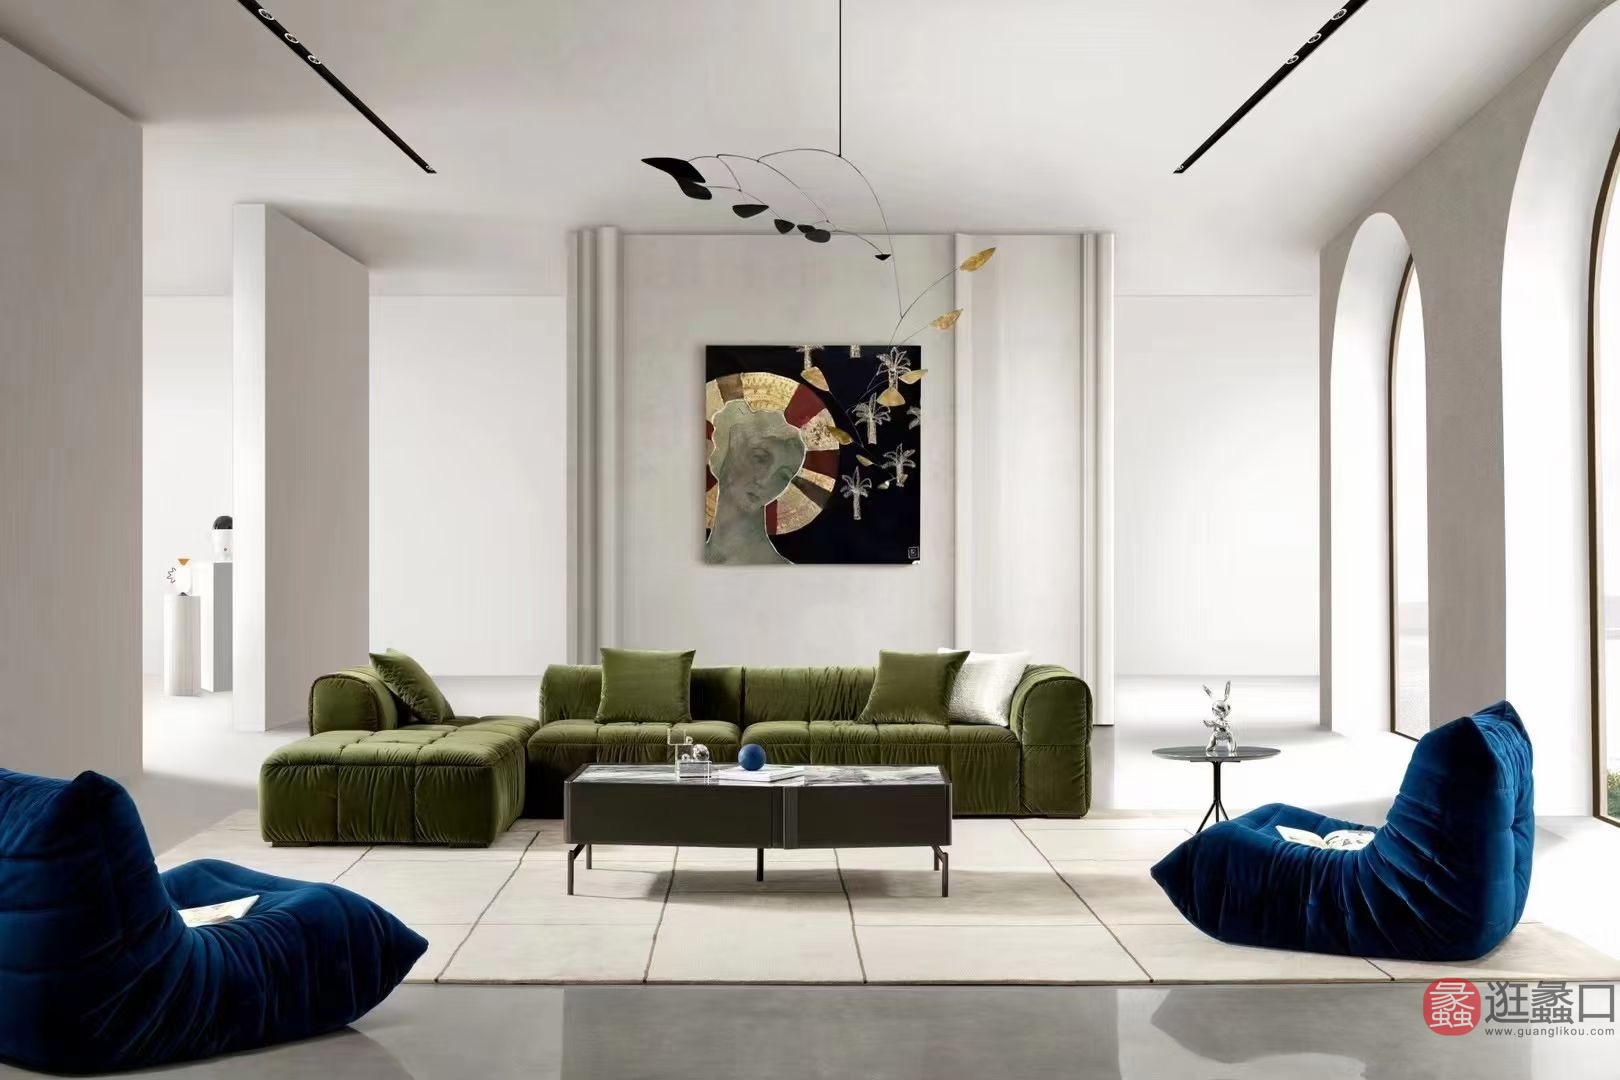 蠡口家具城L&D家居北欧风客厅模块布艺沙发（草绿色）设计师款LD009